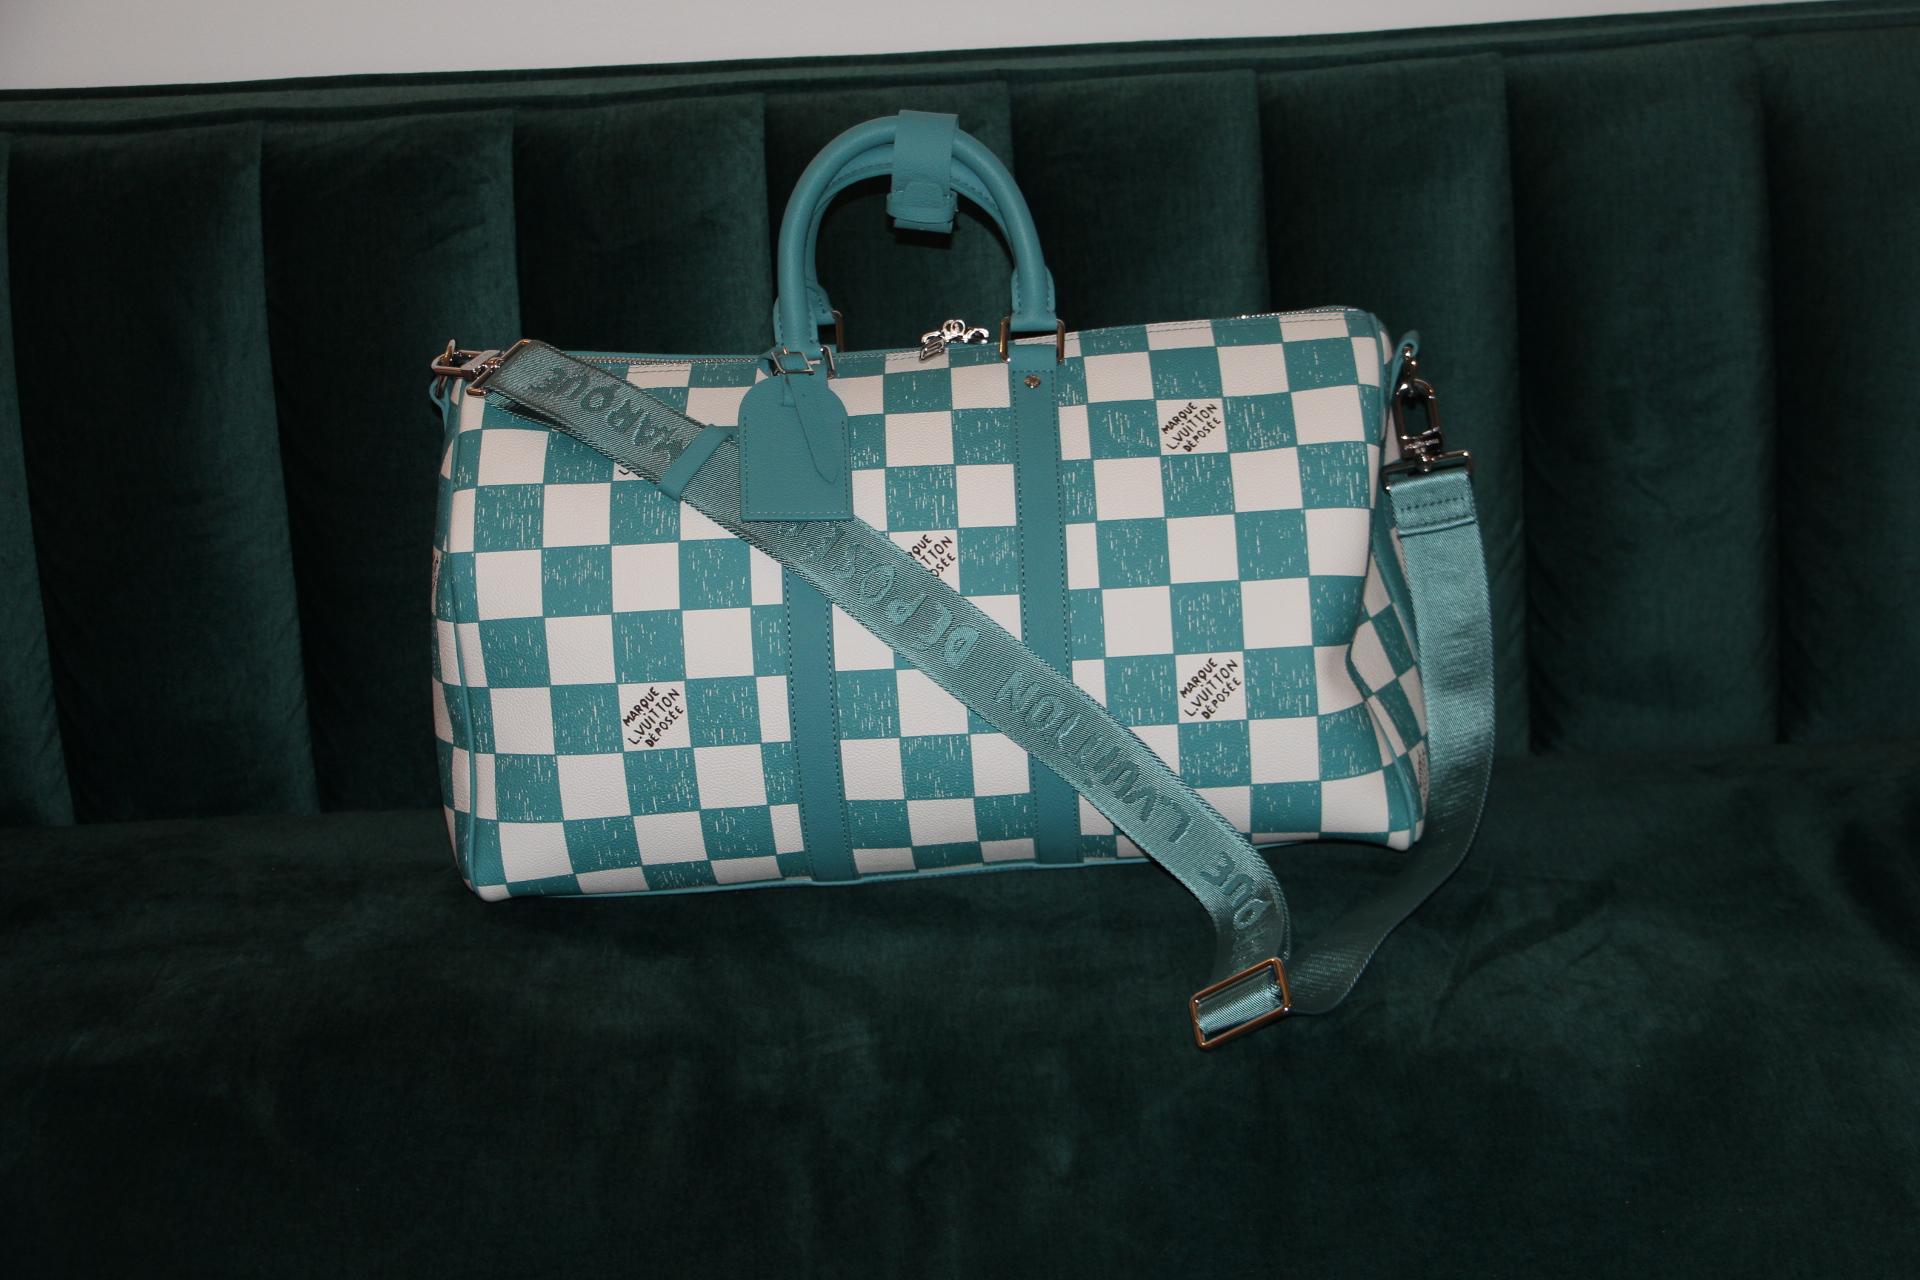 Ce superbe sac Keepall Bandoulière 45 est entièrement réalisé en cuir avec un motif damier Damier bleu turquoise et blanc. Ses poignées supérieures, ses bandes latérales et son porte-nom en cuir sont également de couleur sarcelle. Les carrés ont